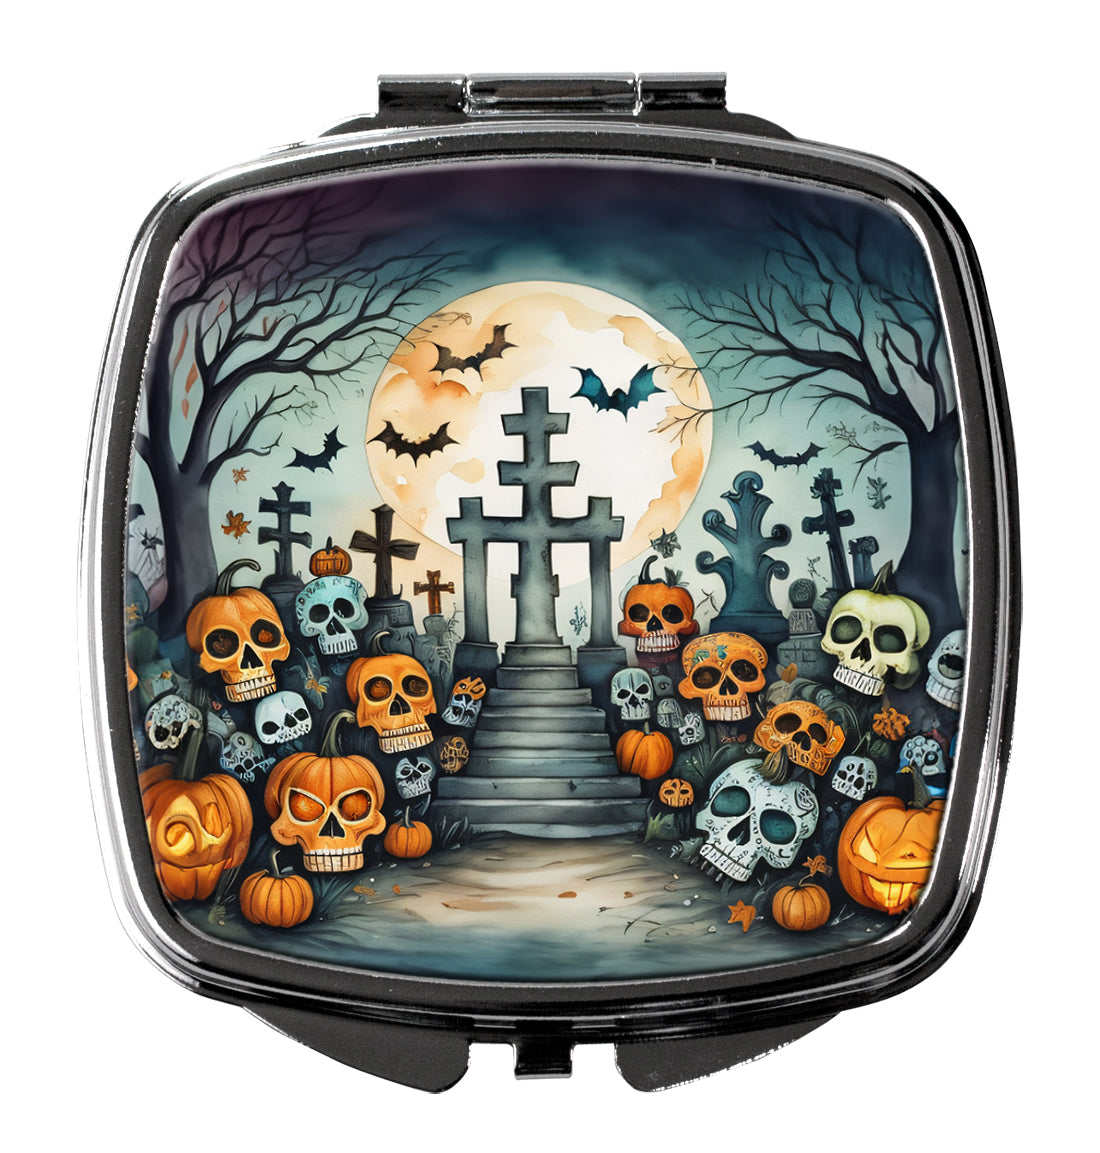 Buy this Calaveras Sugar Skulls Spooky Halloween Compact Mirror